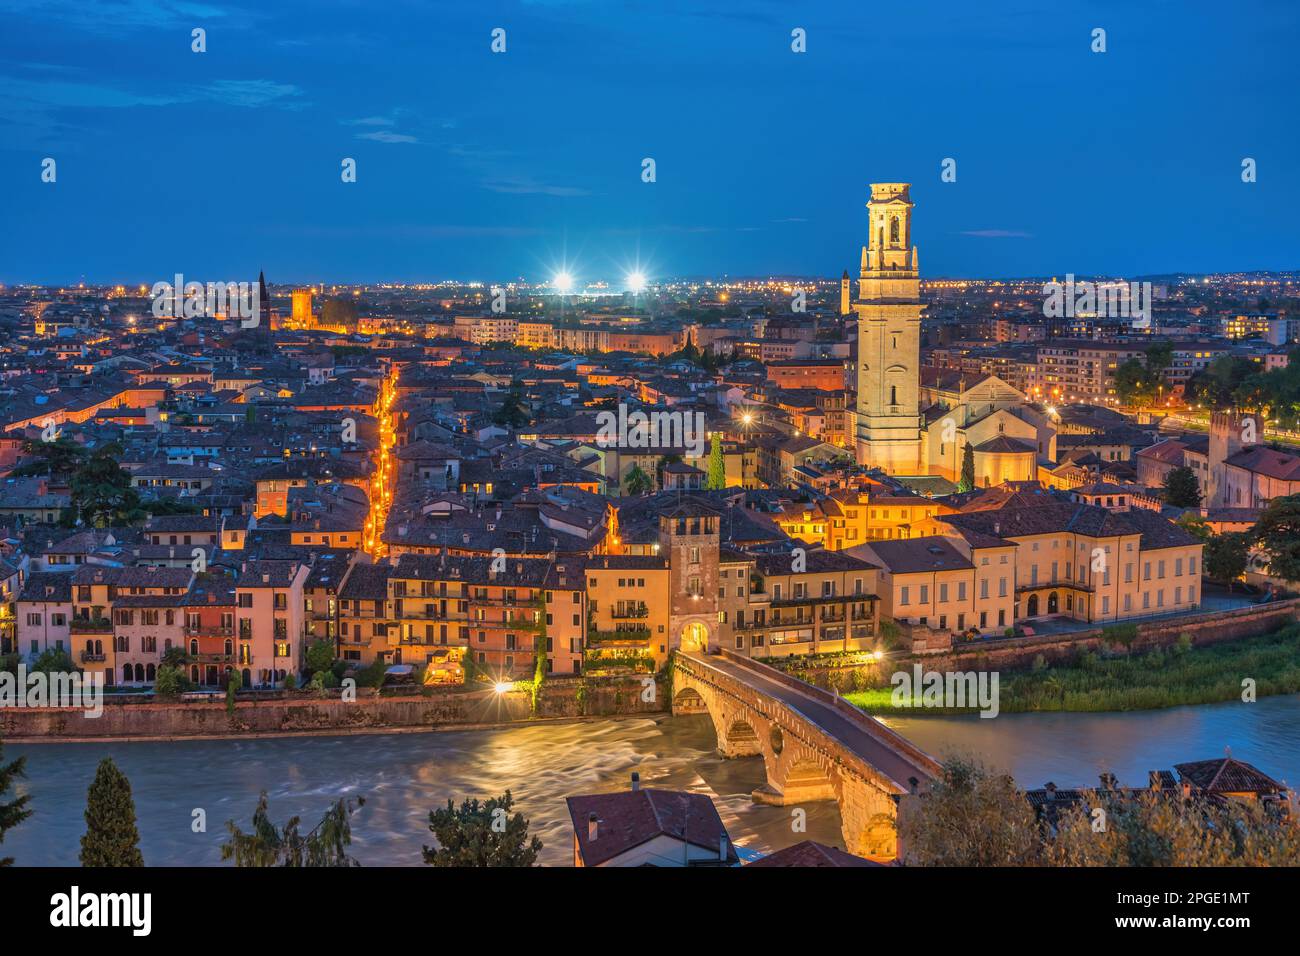 Vérone Italie, vue panoramique nocturne sur la ville à l'Adige et la cathédrale de Vérone Banque D'Images